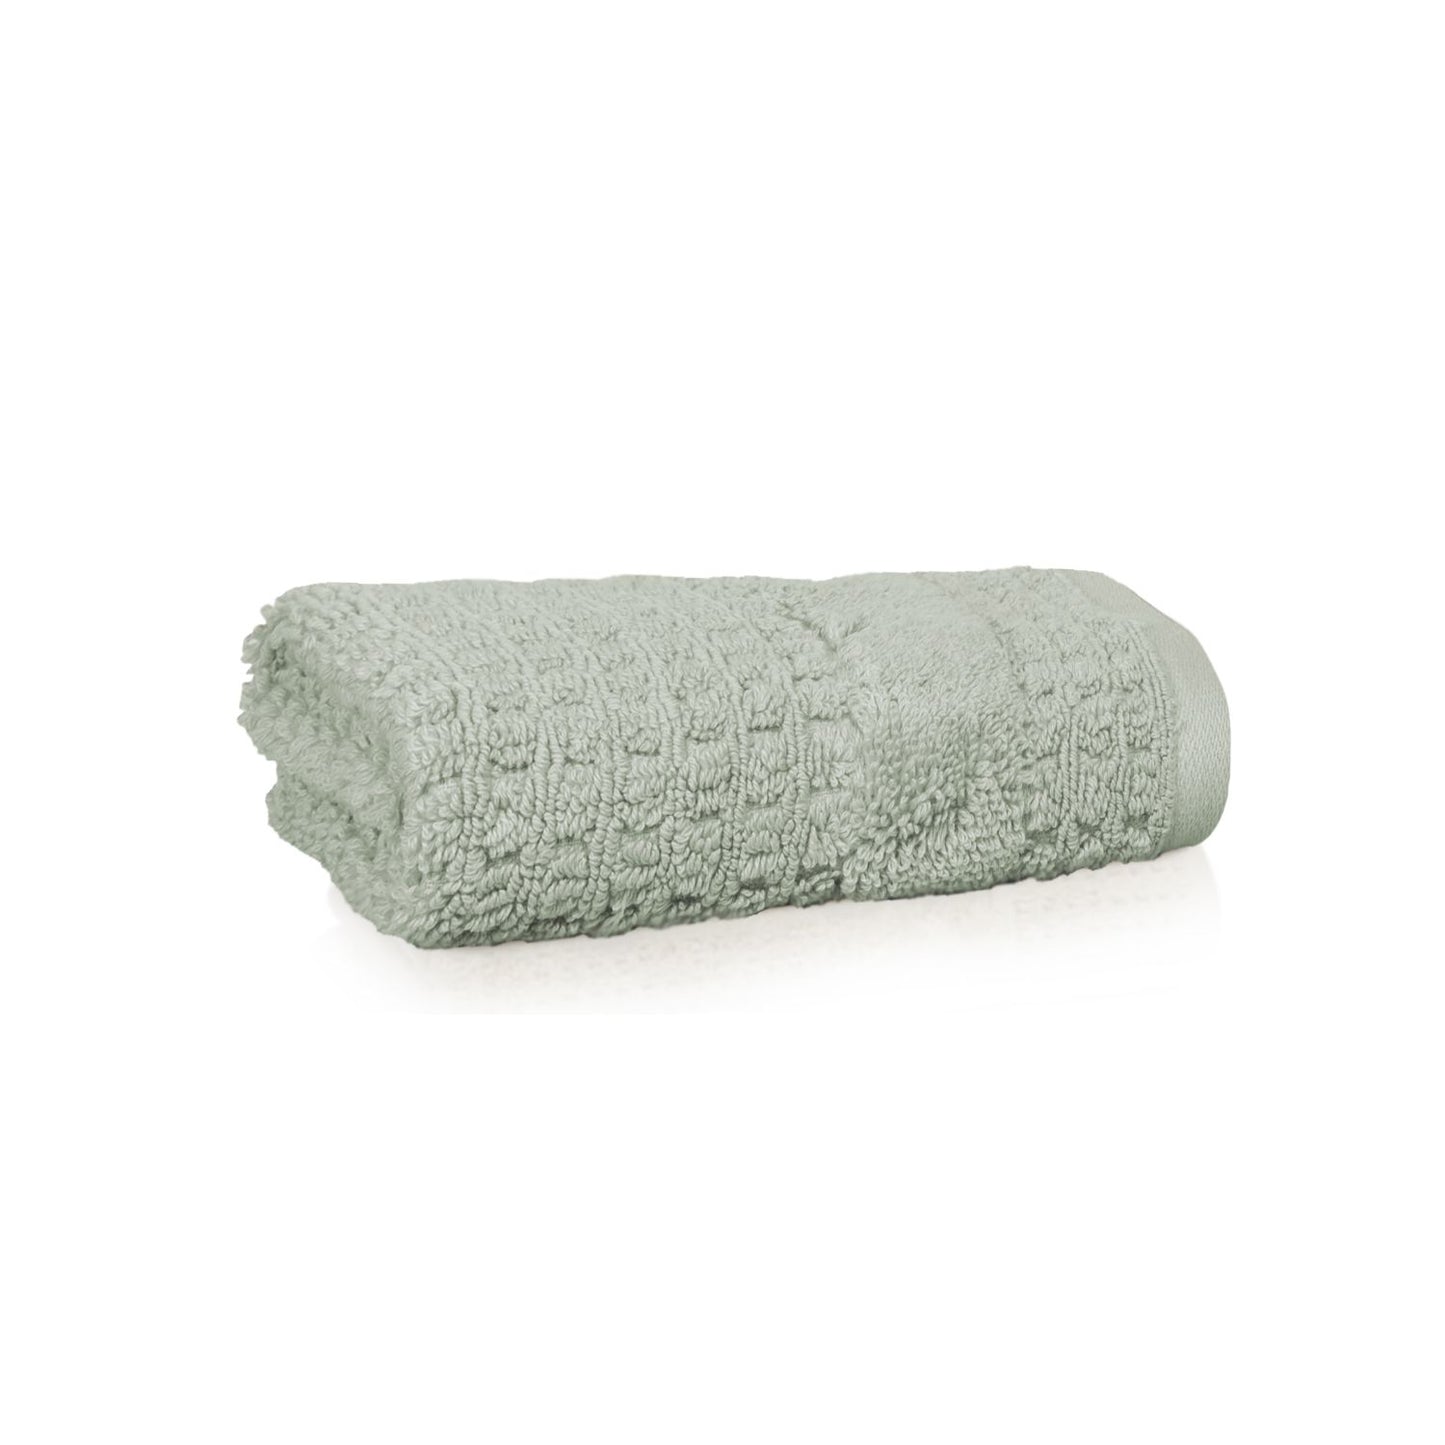 Kassatex Hammam Hand Towel